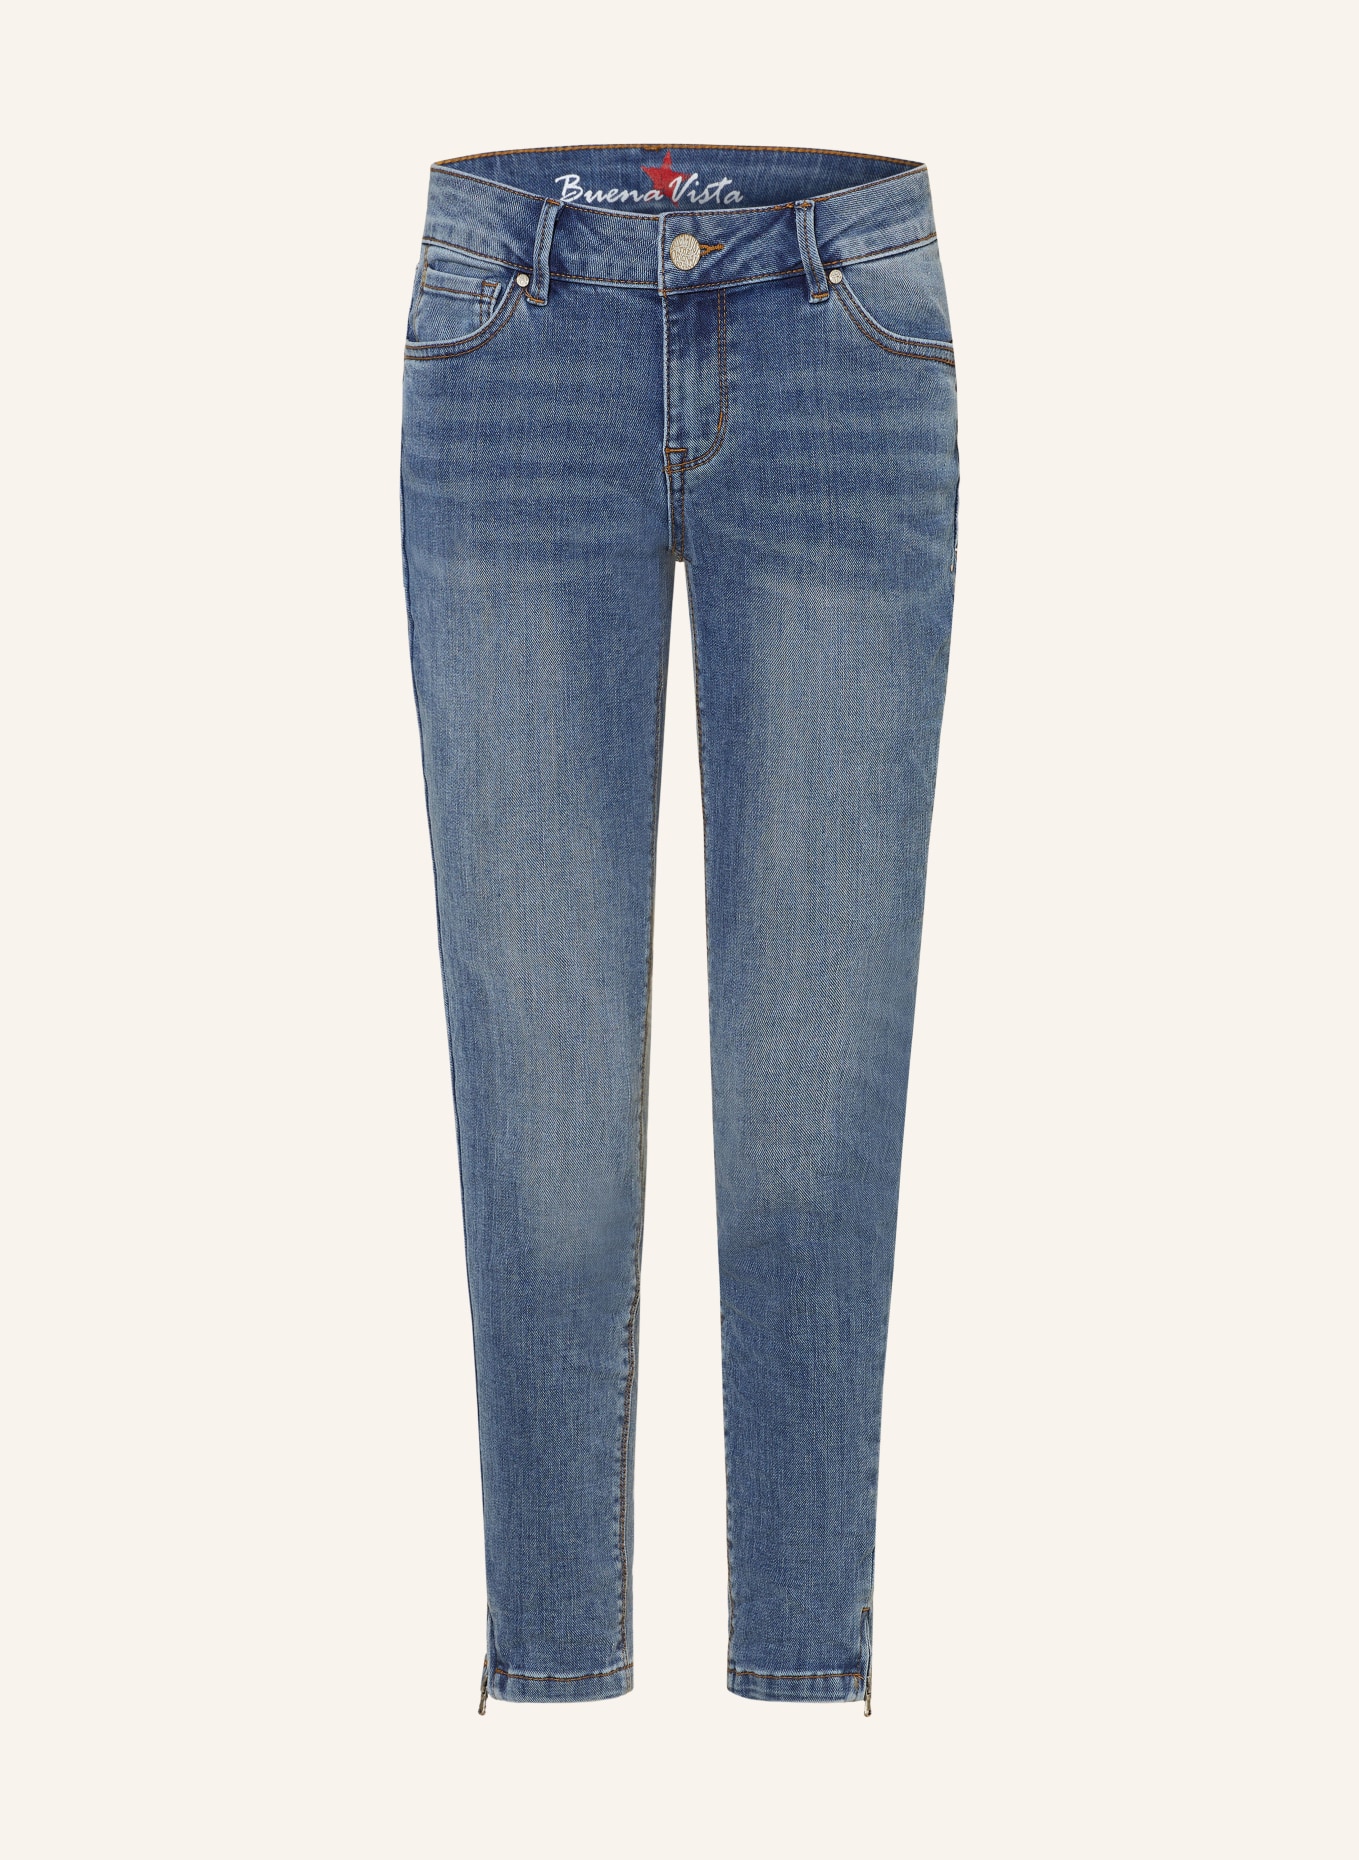 Buena Vista 7/8 jeans ITALY, Color: 5570 cyan denim (Image 1)